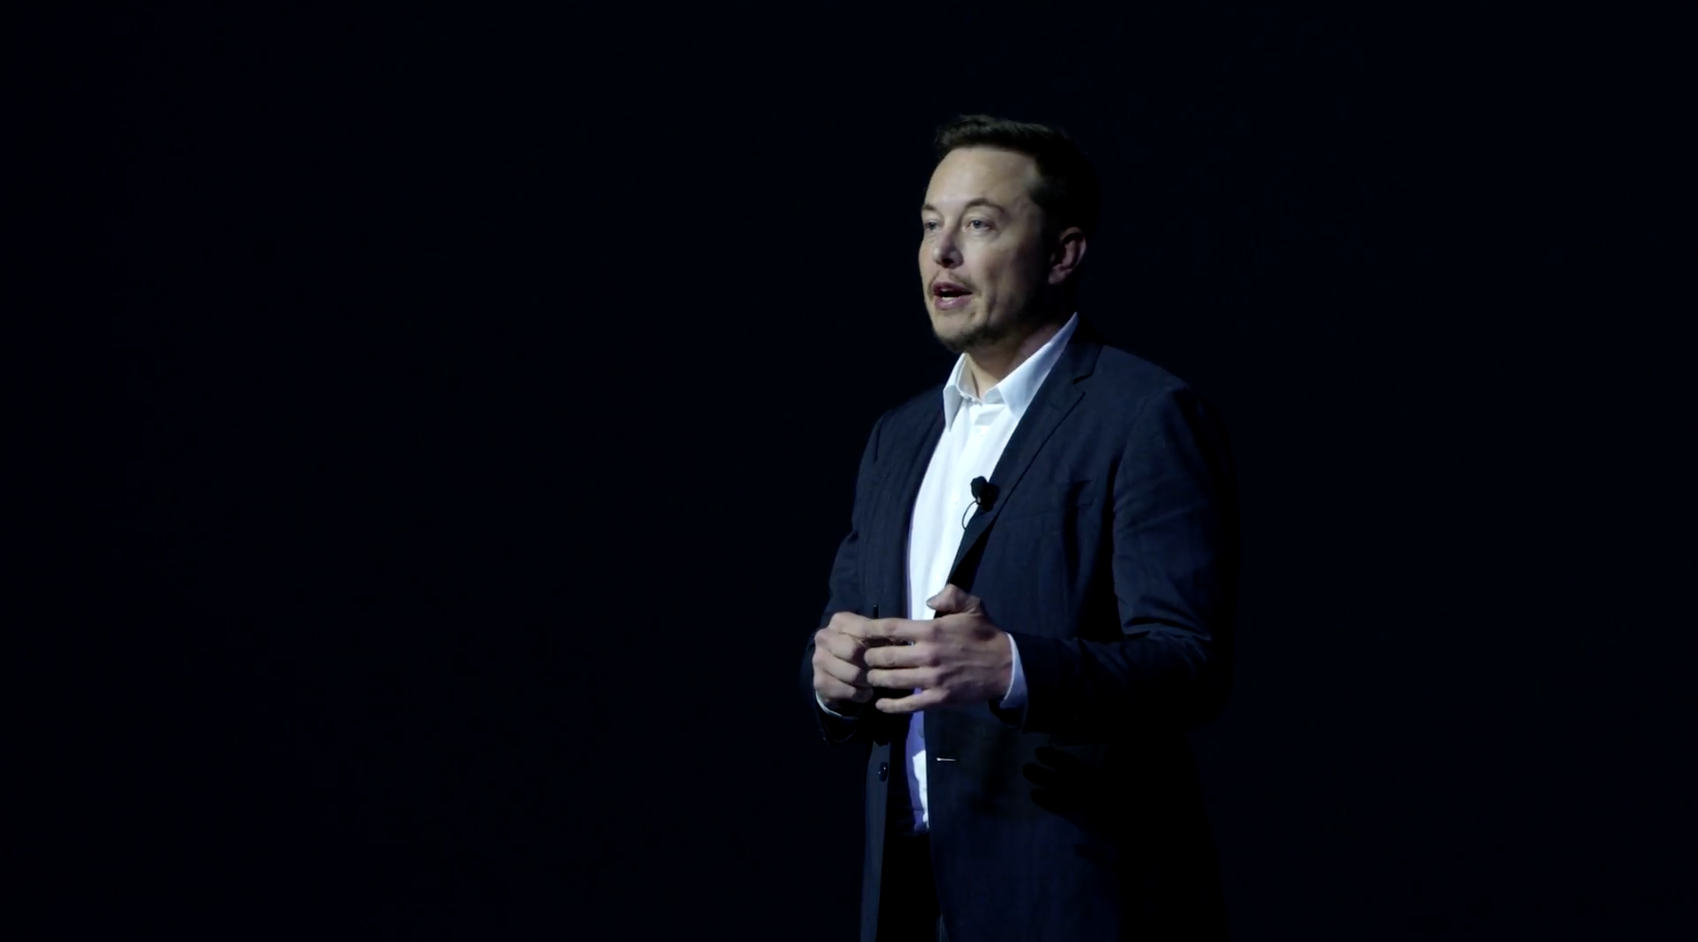 Elon Musk giving a speech to an audience.